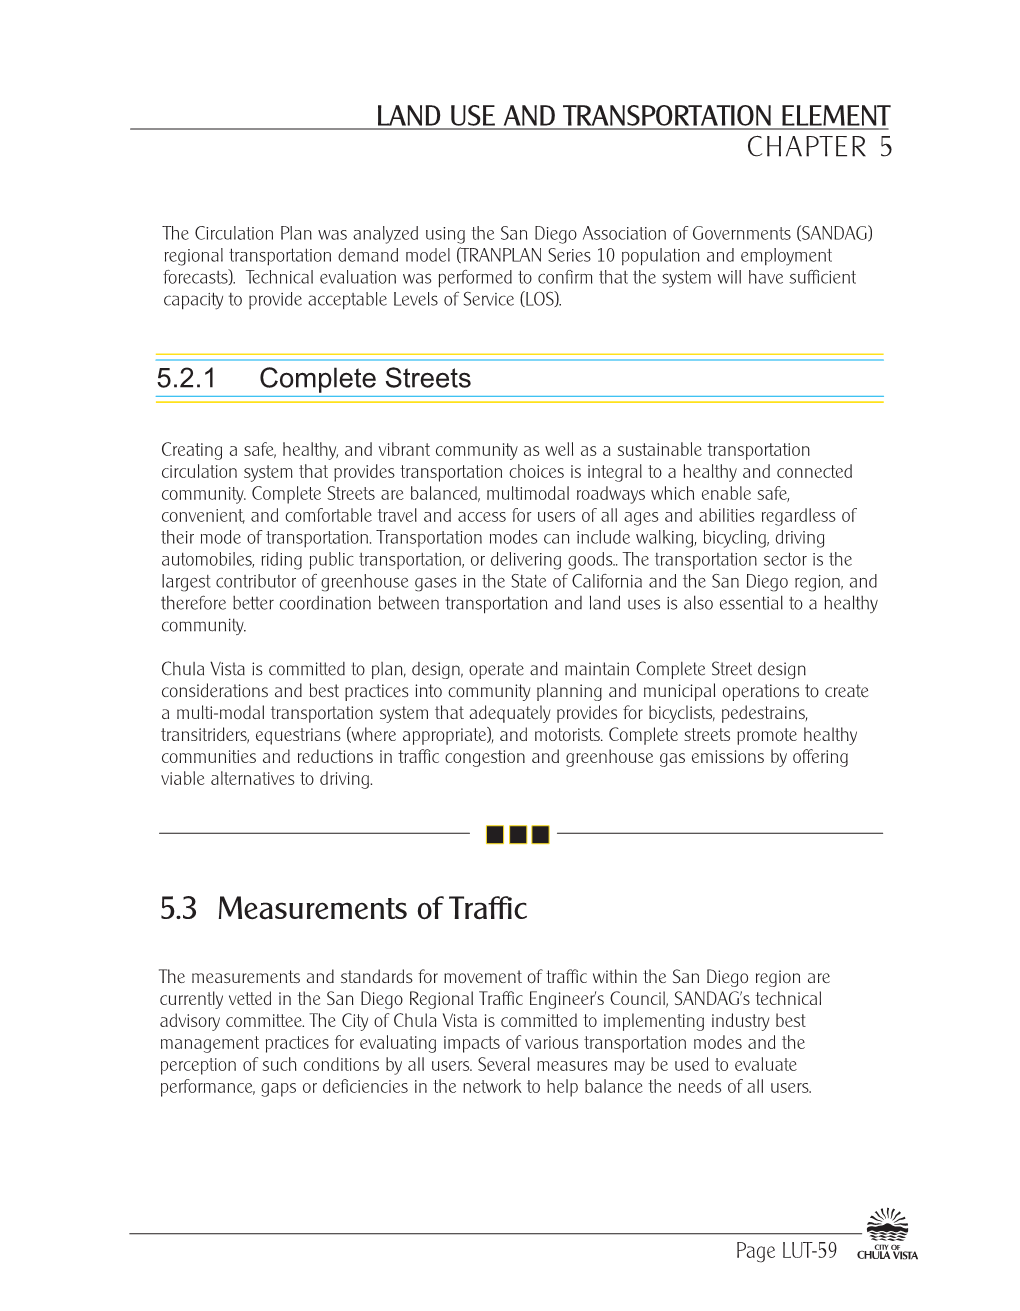 5.3 Measurements of Traffic